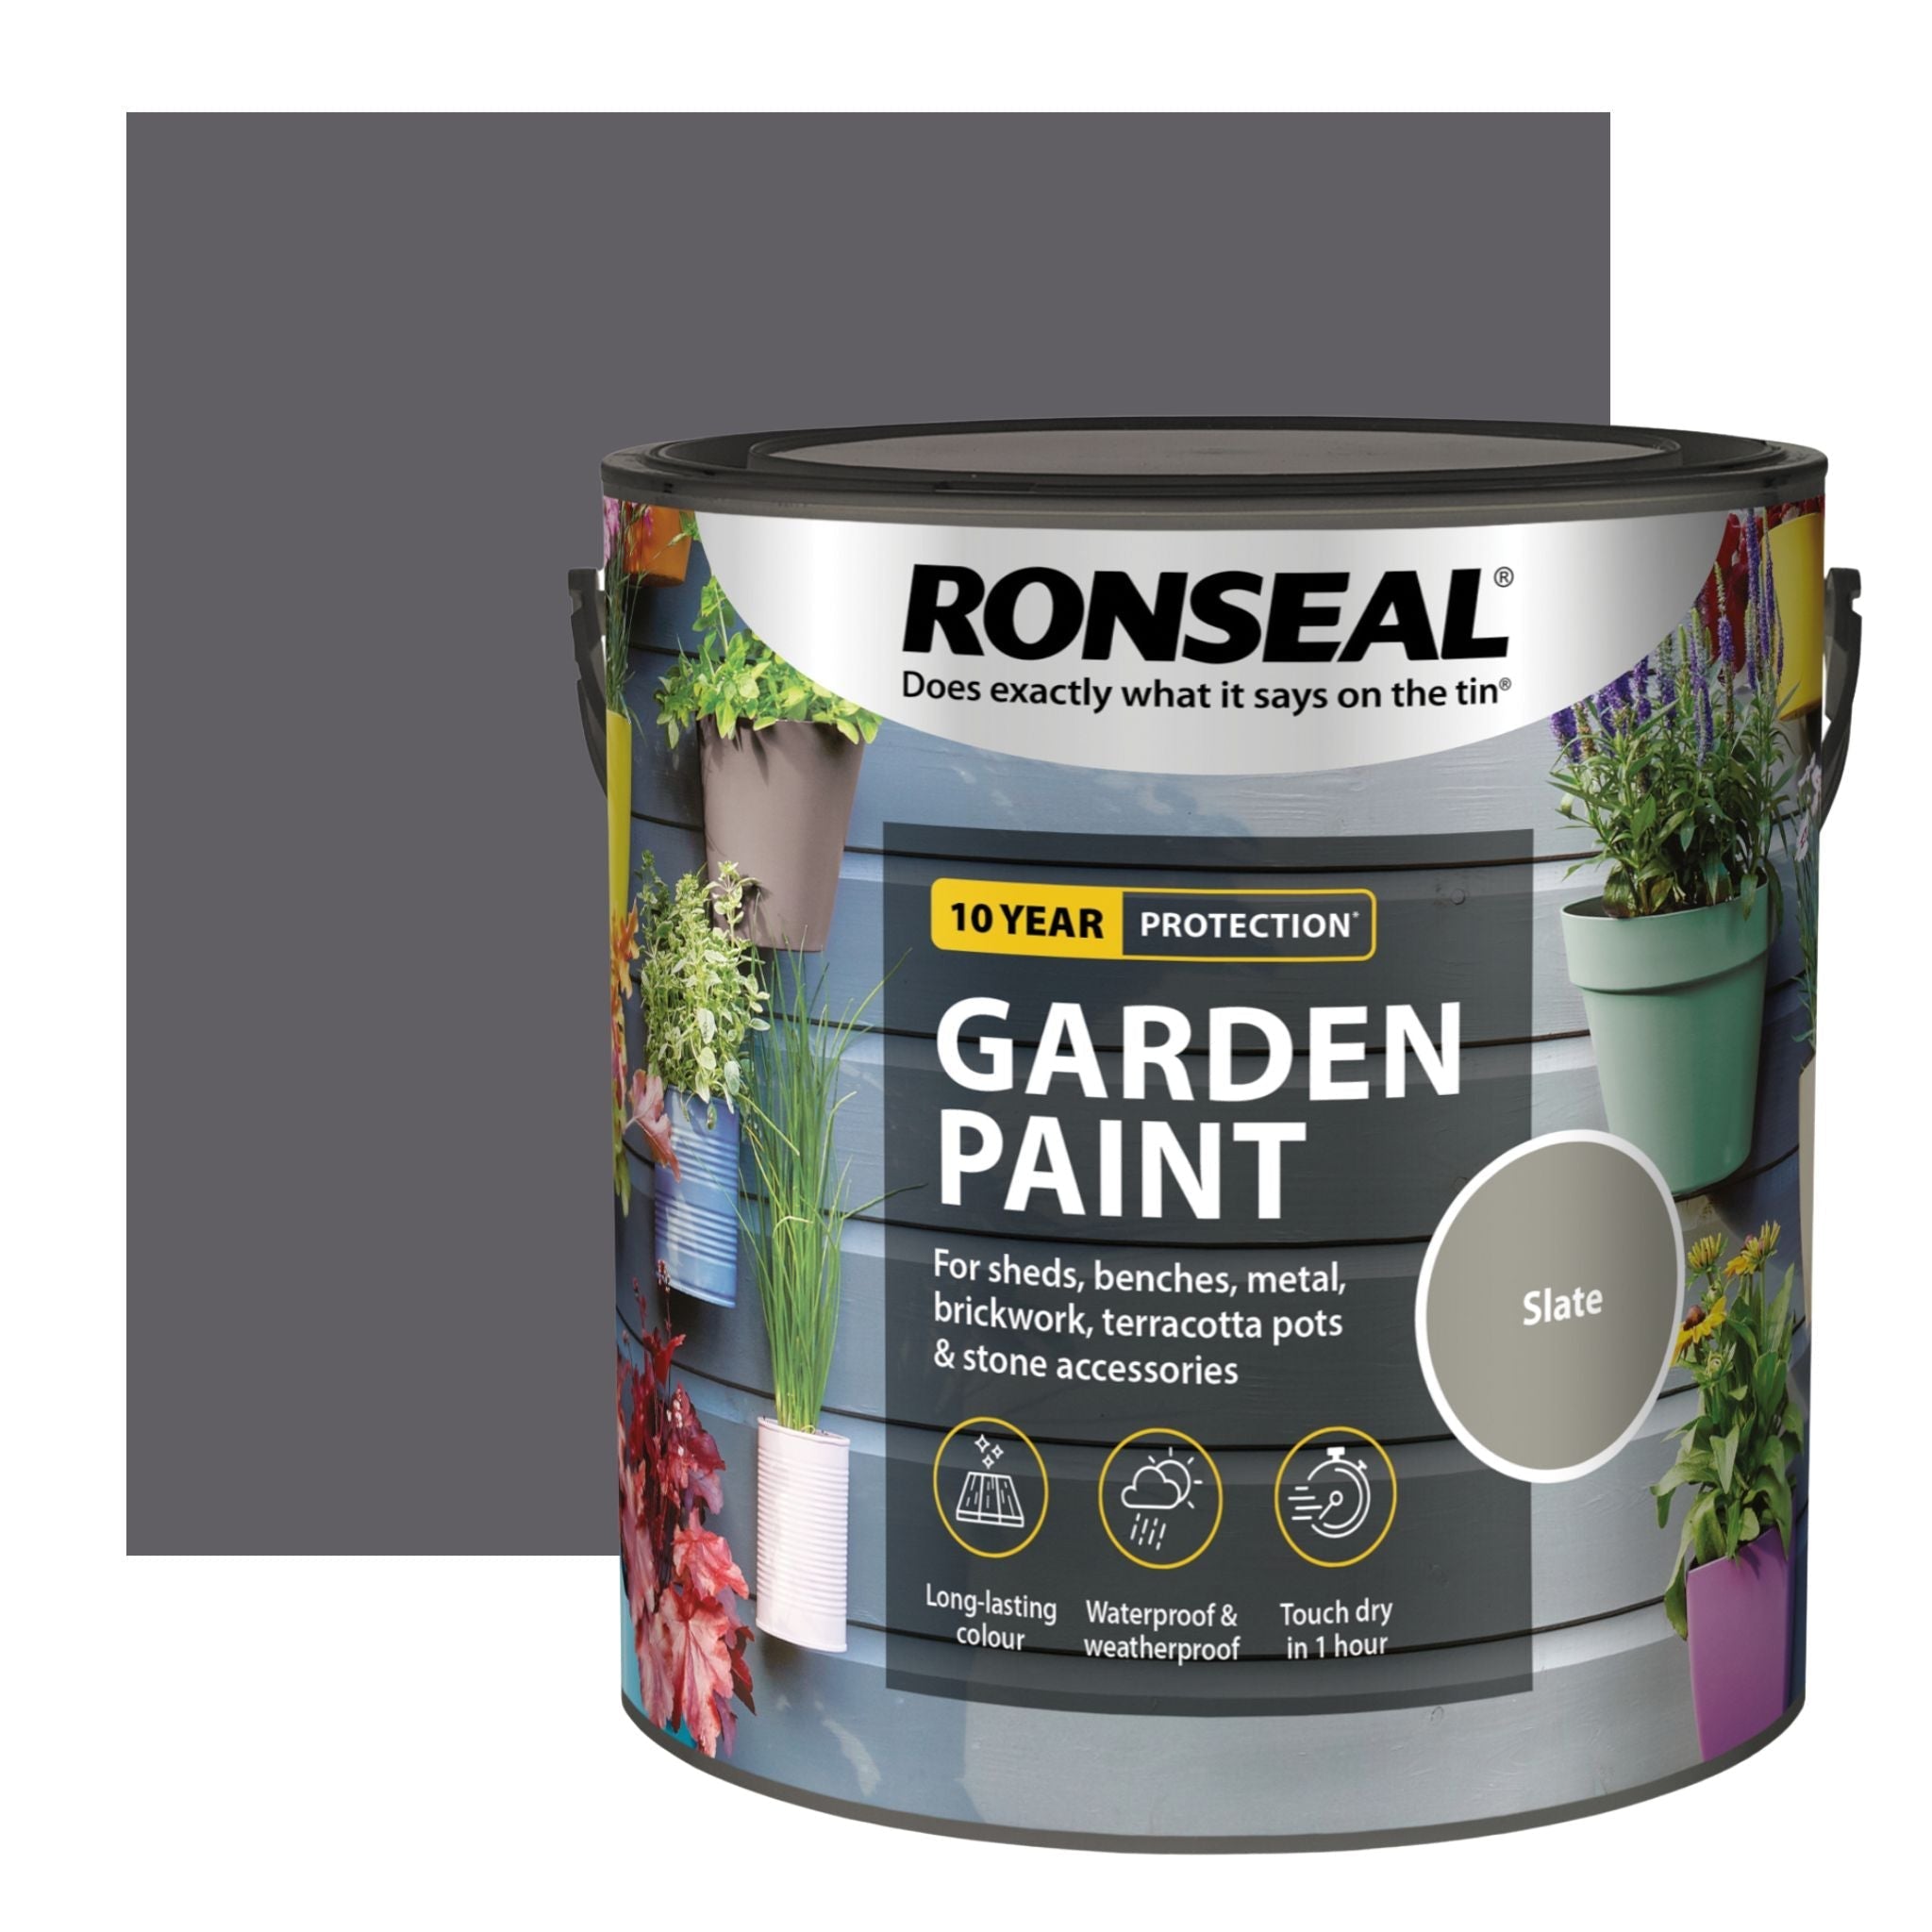 Ronseal Garden Paint - Restorate-5010214874316